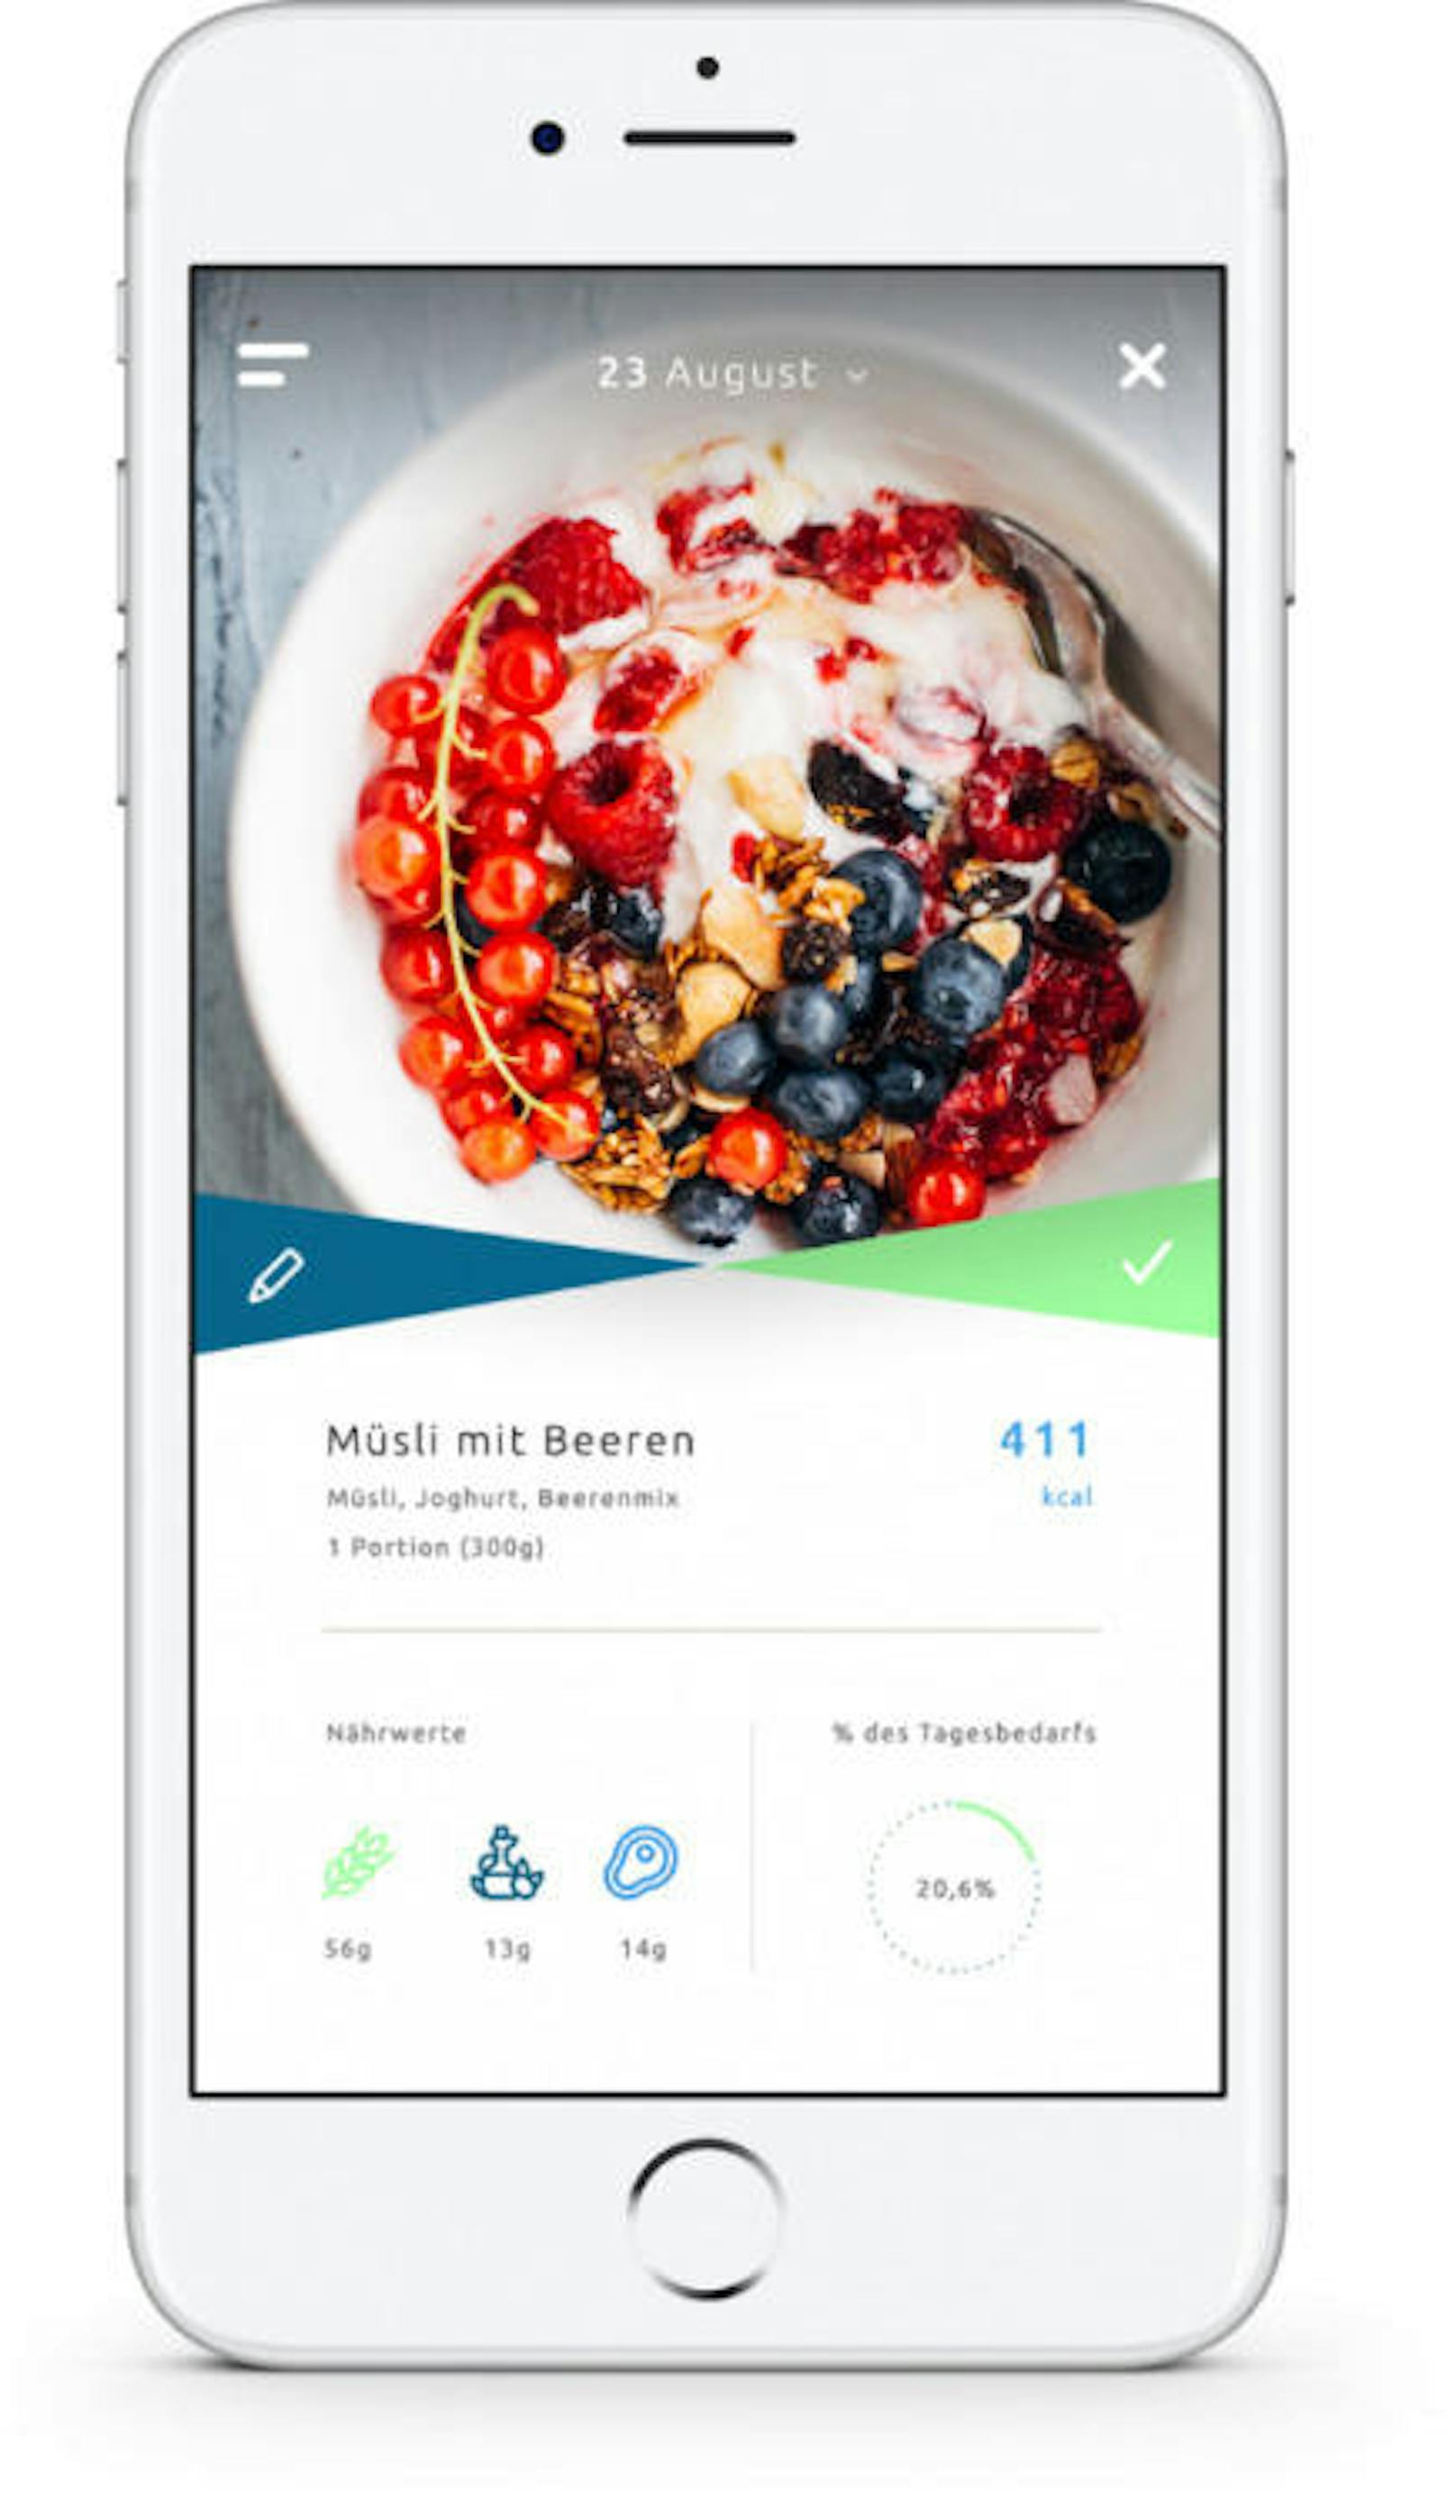 Die App macht ein Foto und zählt dann die Kalorien der Speise.